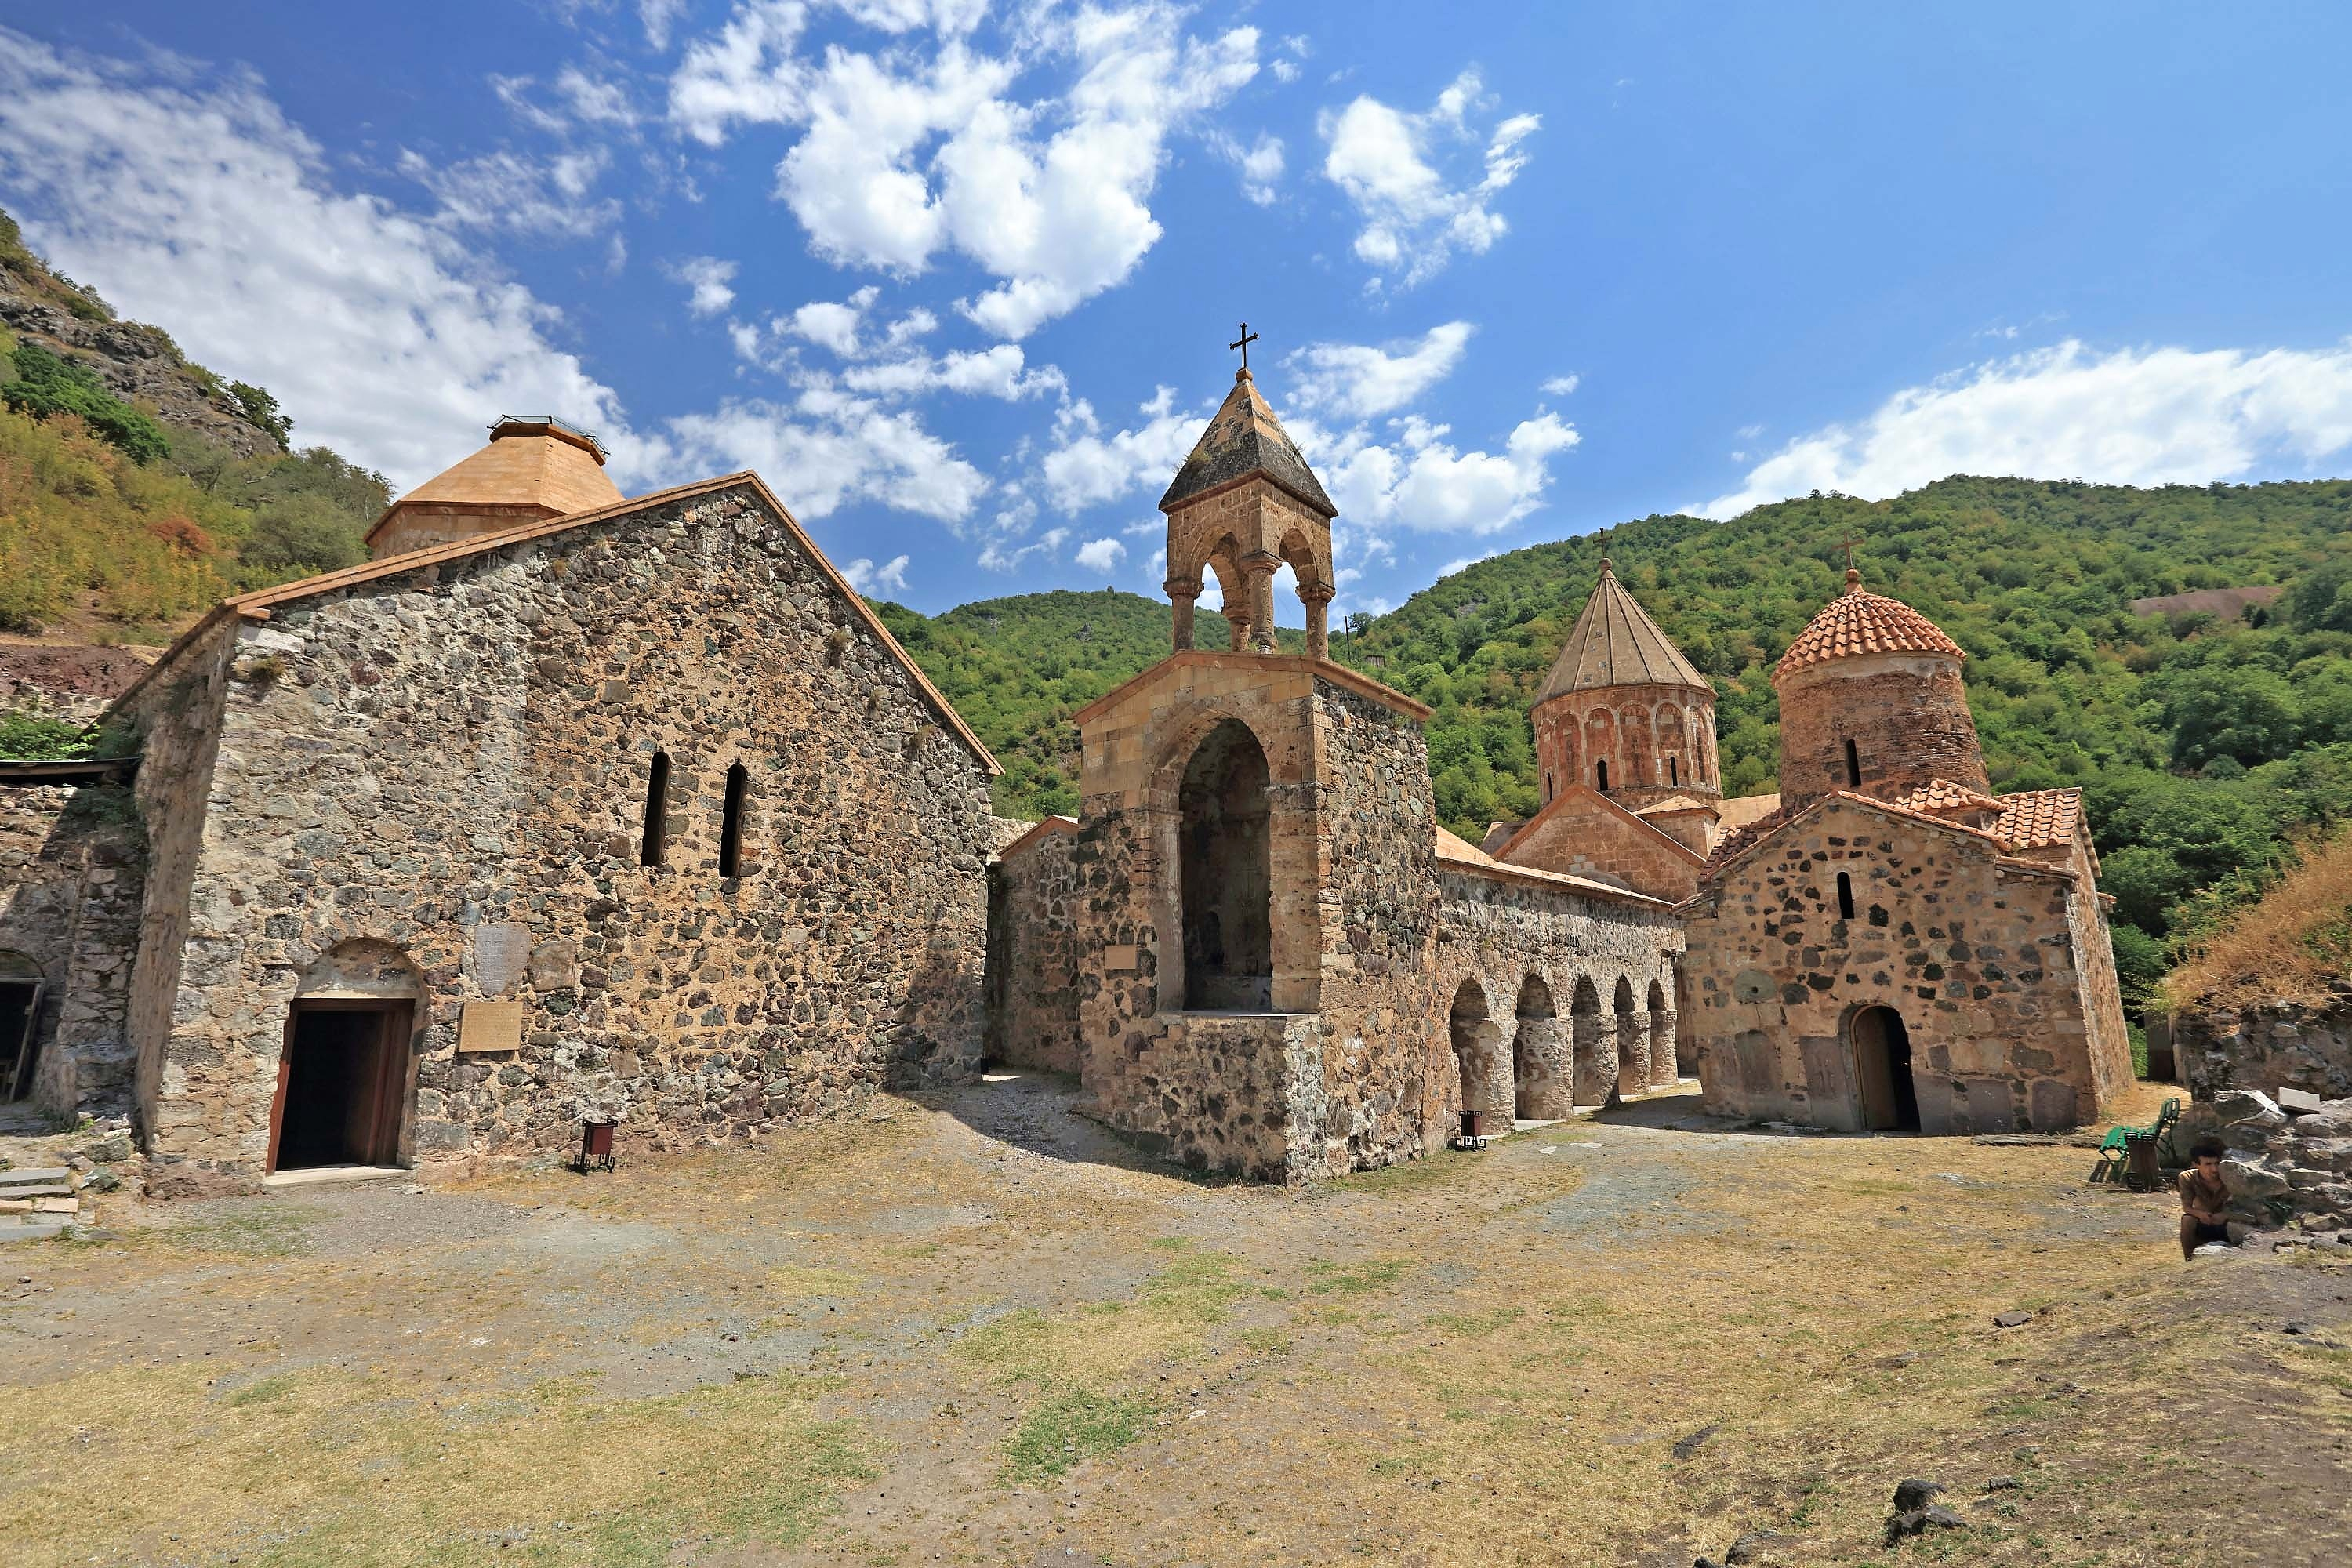 Ermənilər tarixi kompleksi dağıdır, əşyaları söküb Ermənistana aparırlar - VİDEO